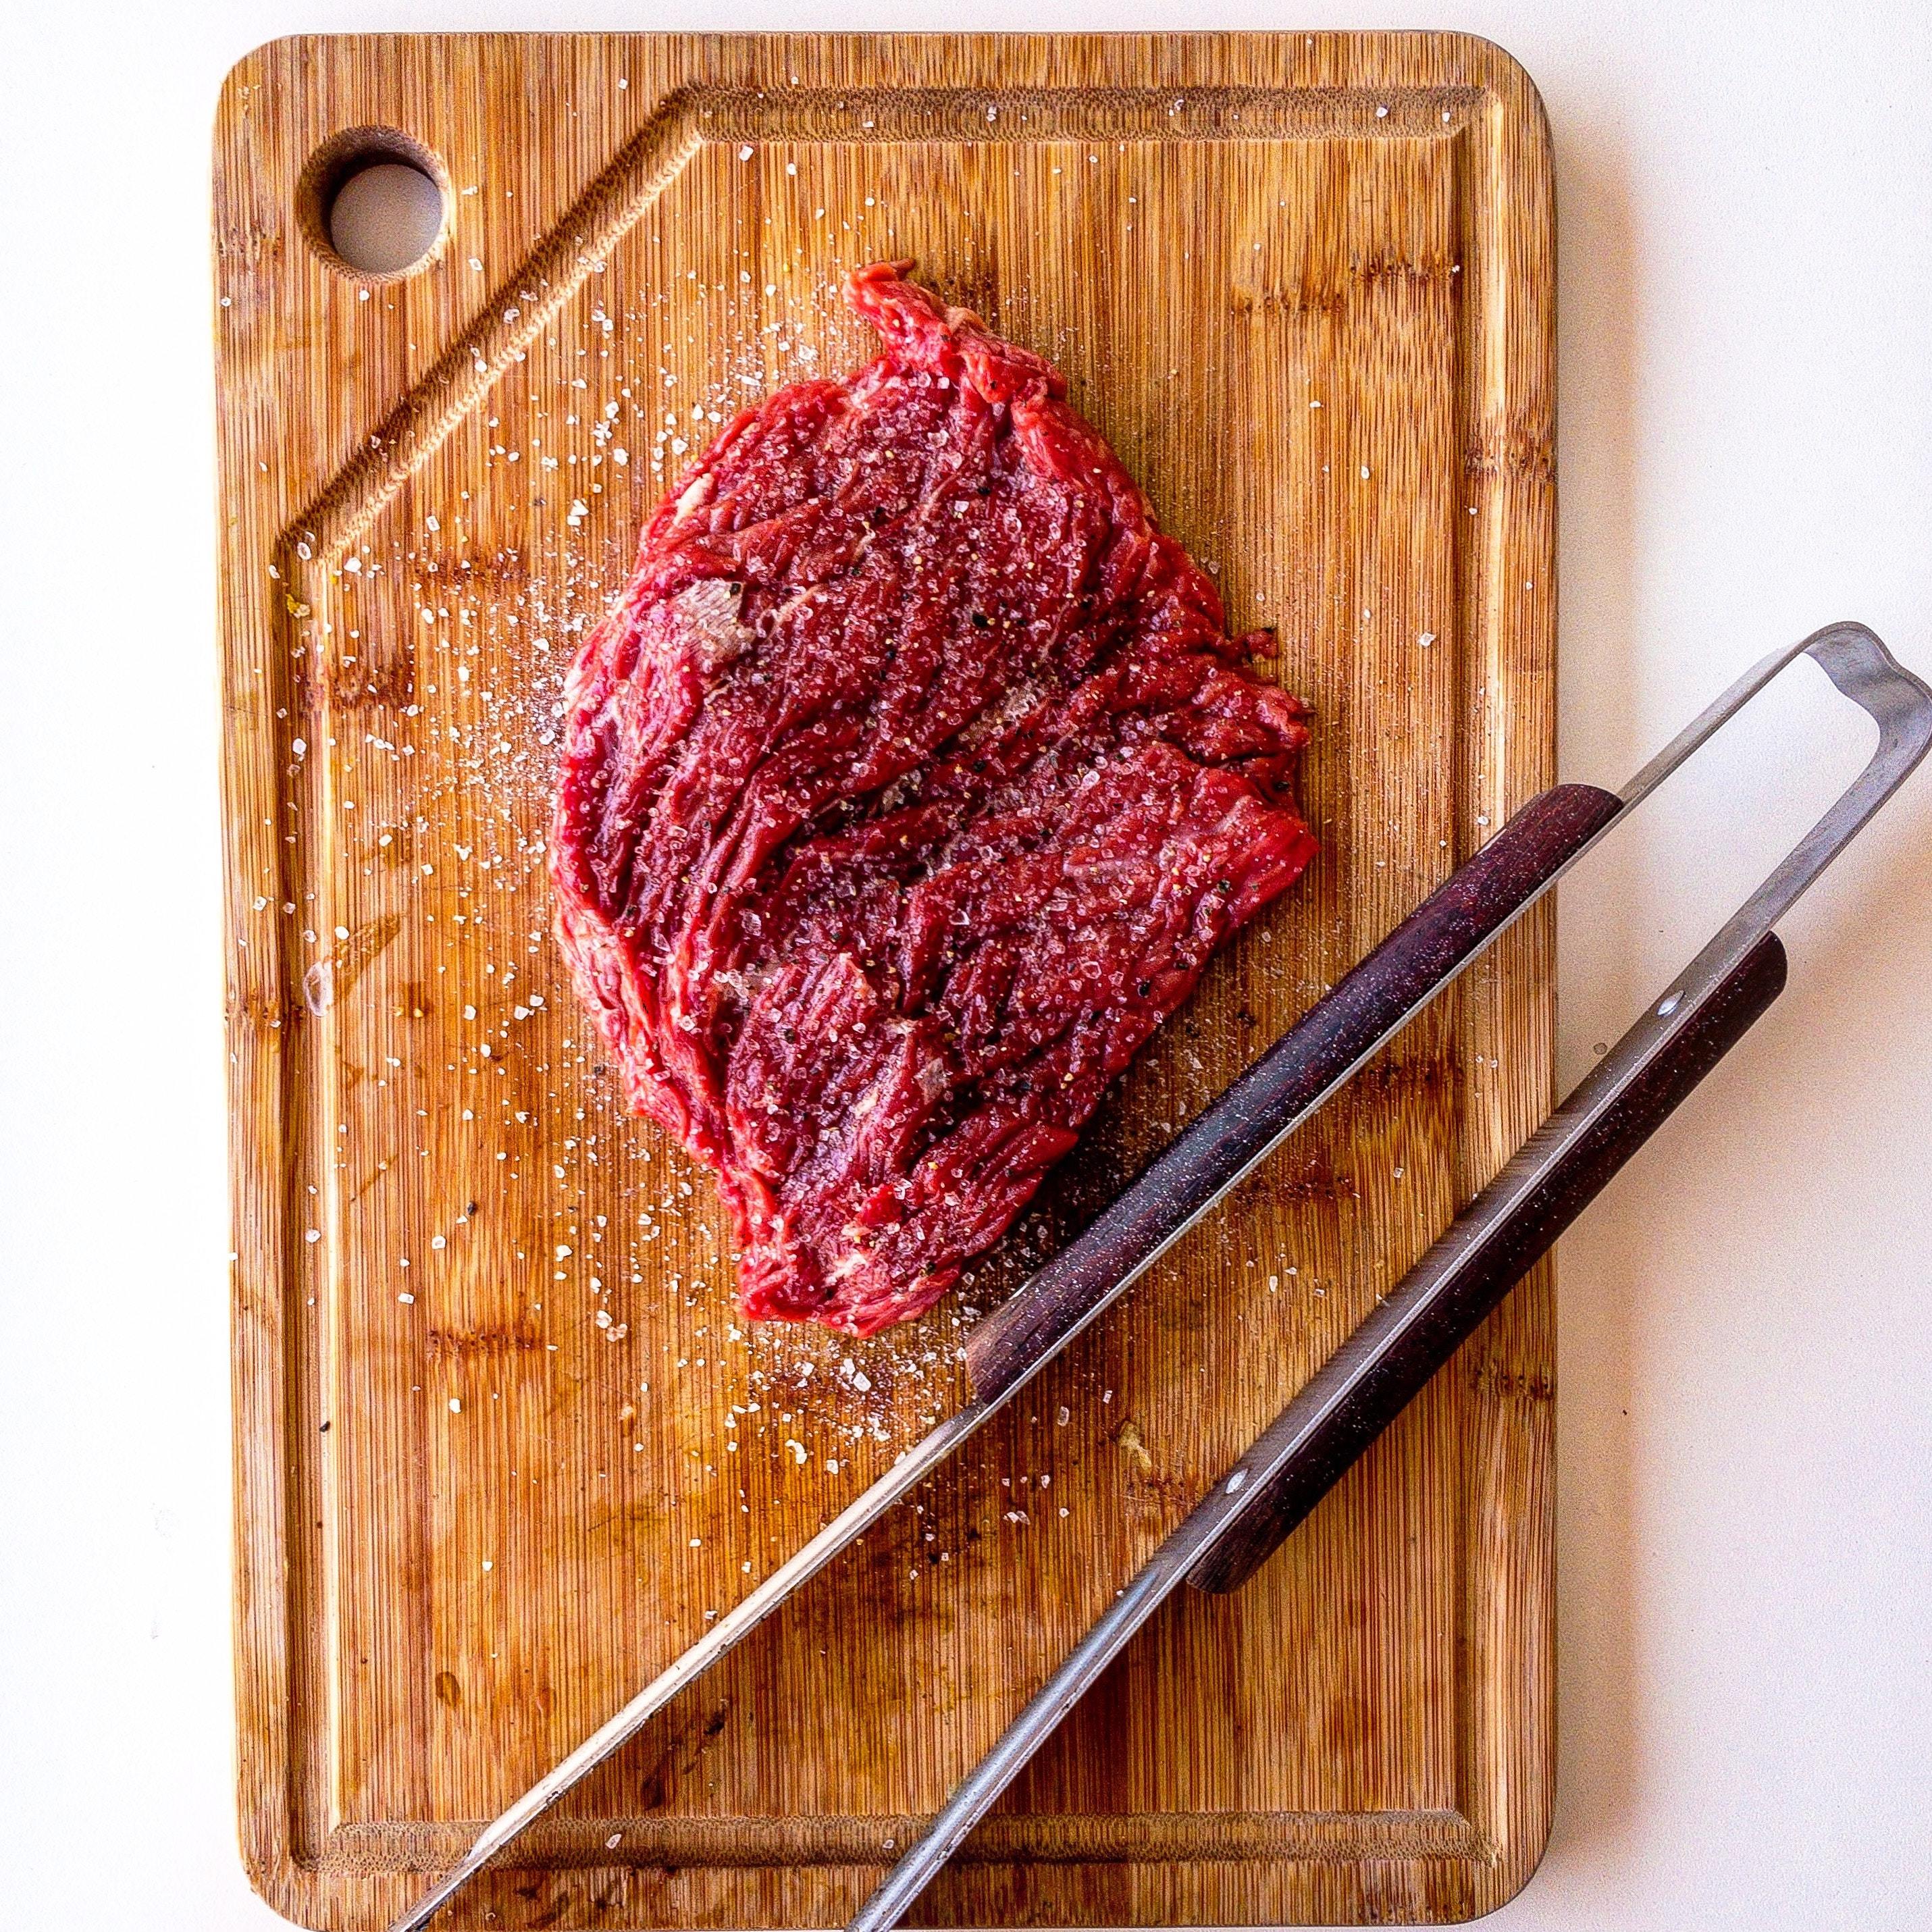 Is (rood) vlees eten wel gezond?